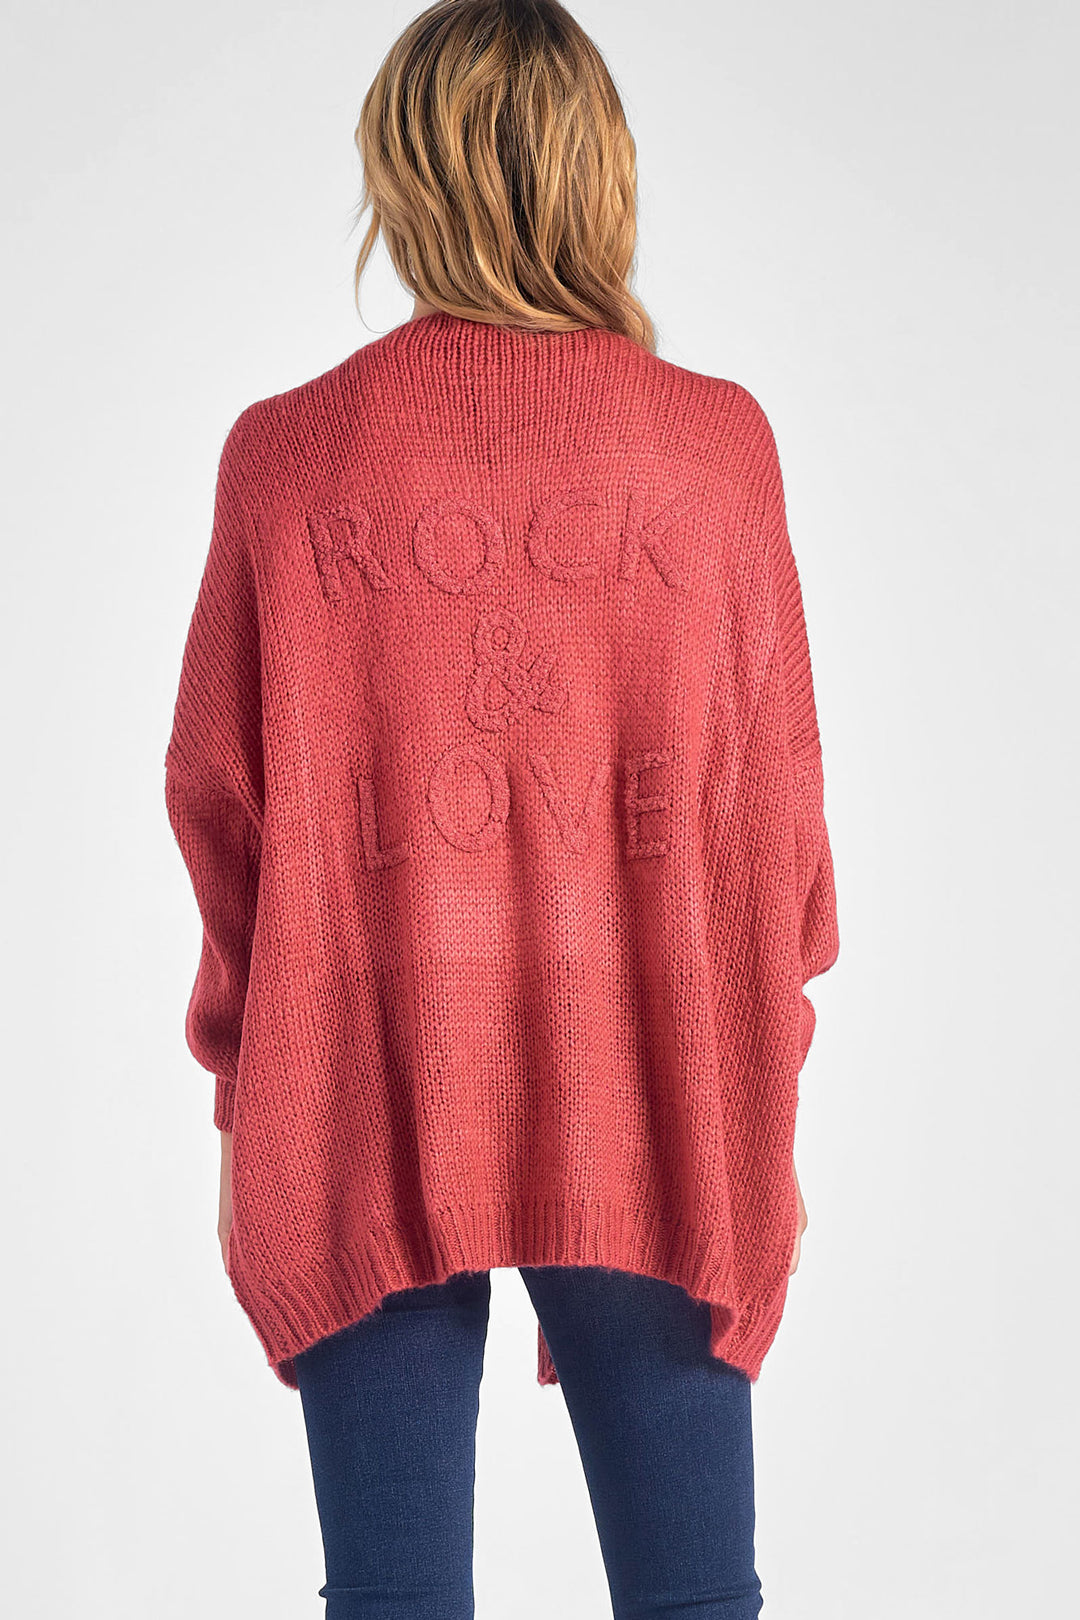 Elan Rock & Love Sweater Cardigan